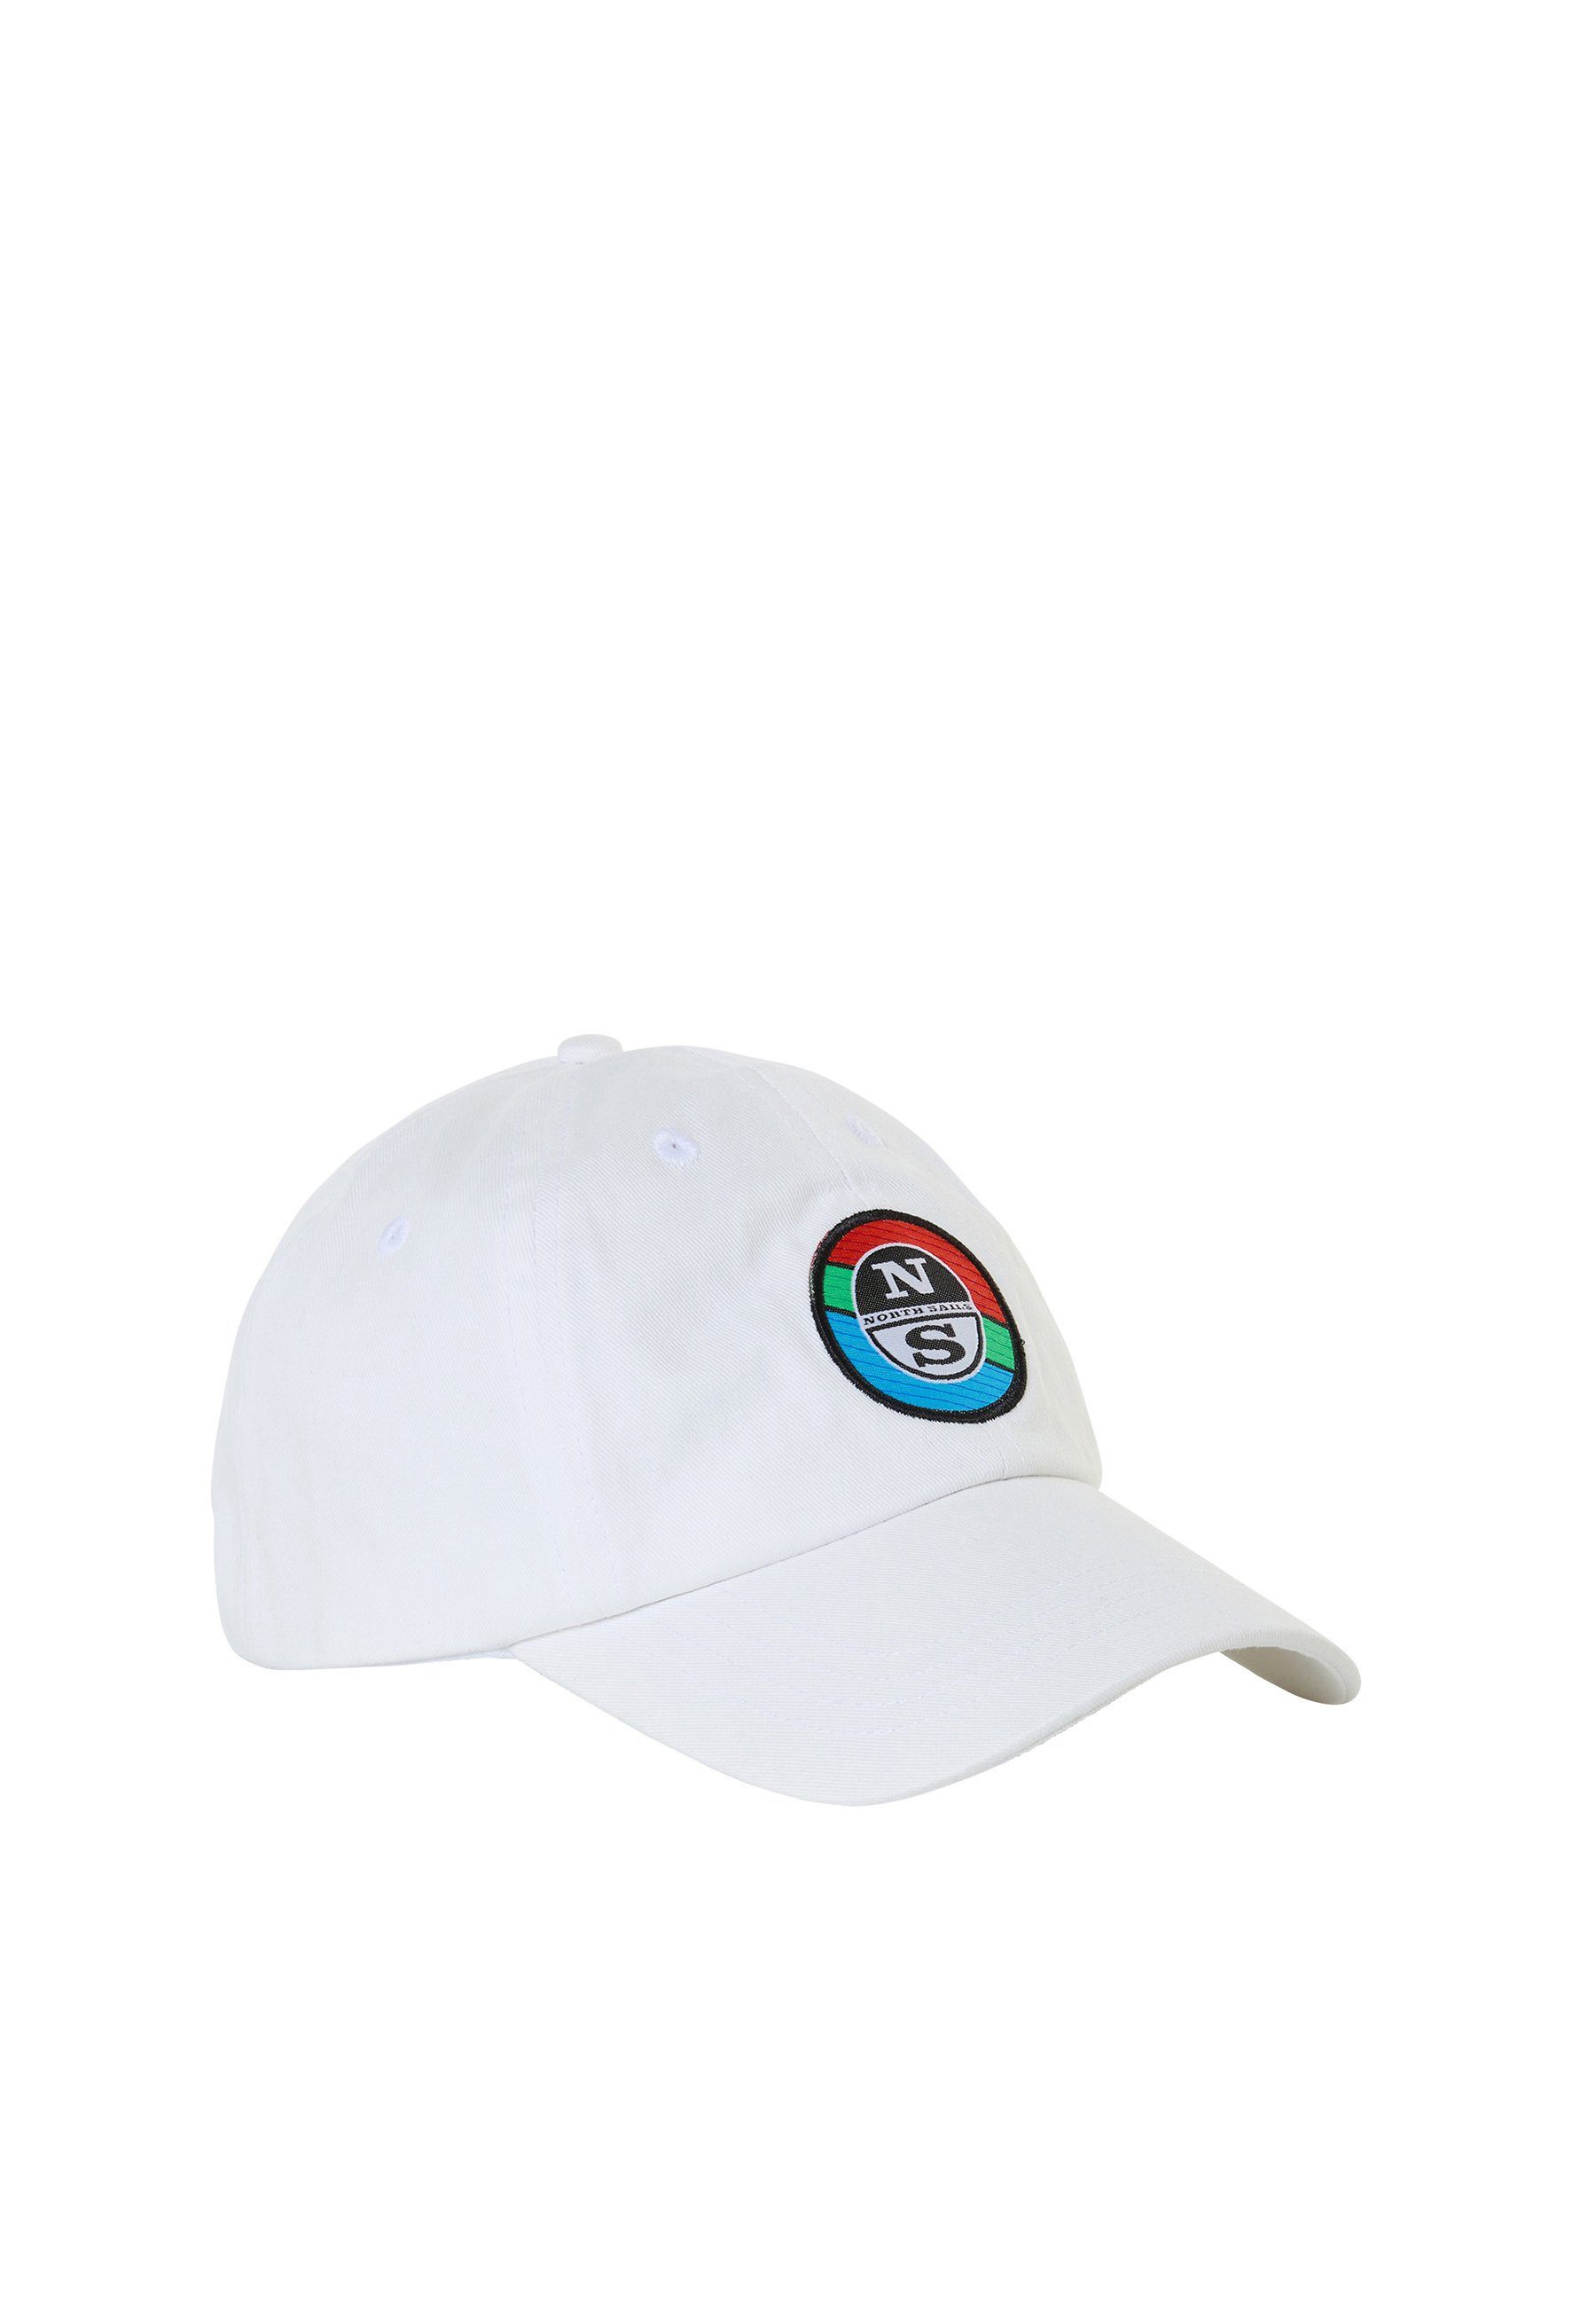 North Sails Baseball Cap Baseballmütze mit Schriftzug weiss | Baseball Caps